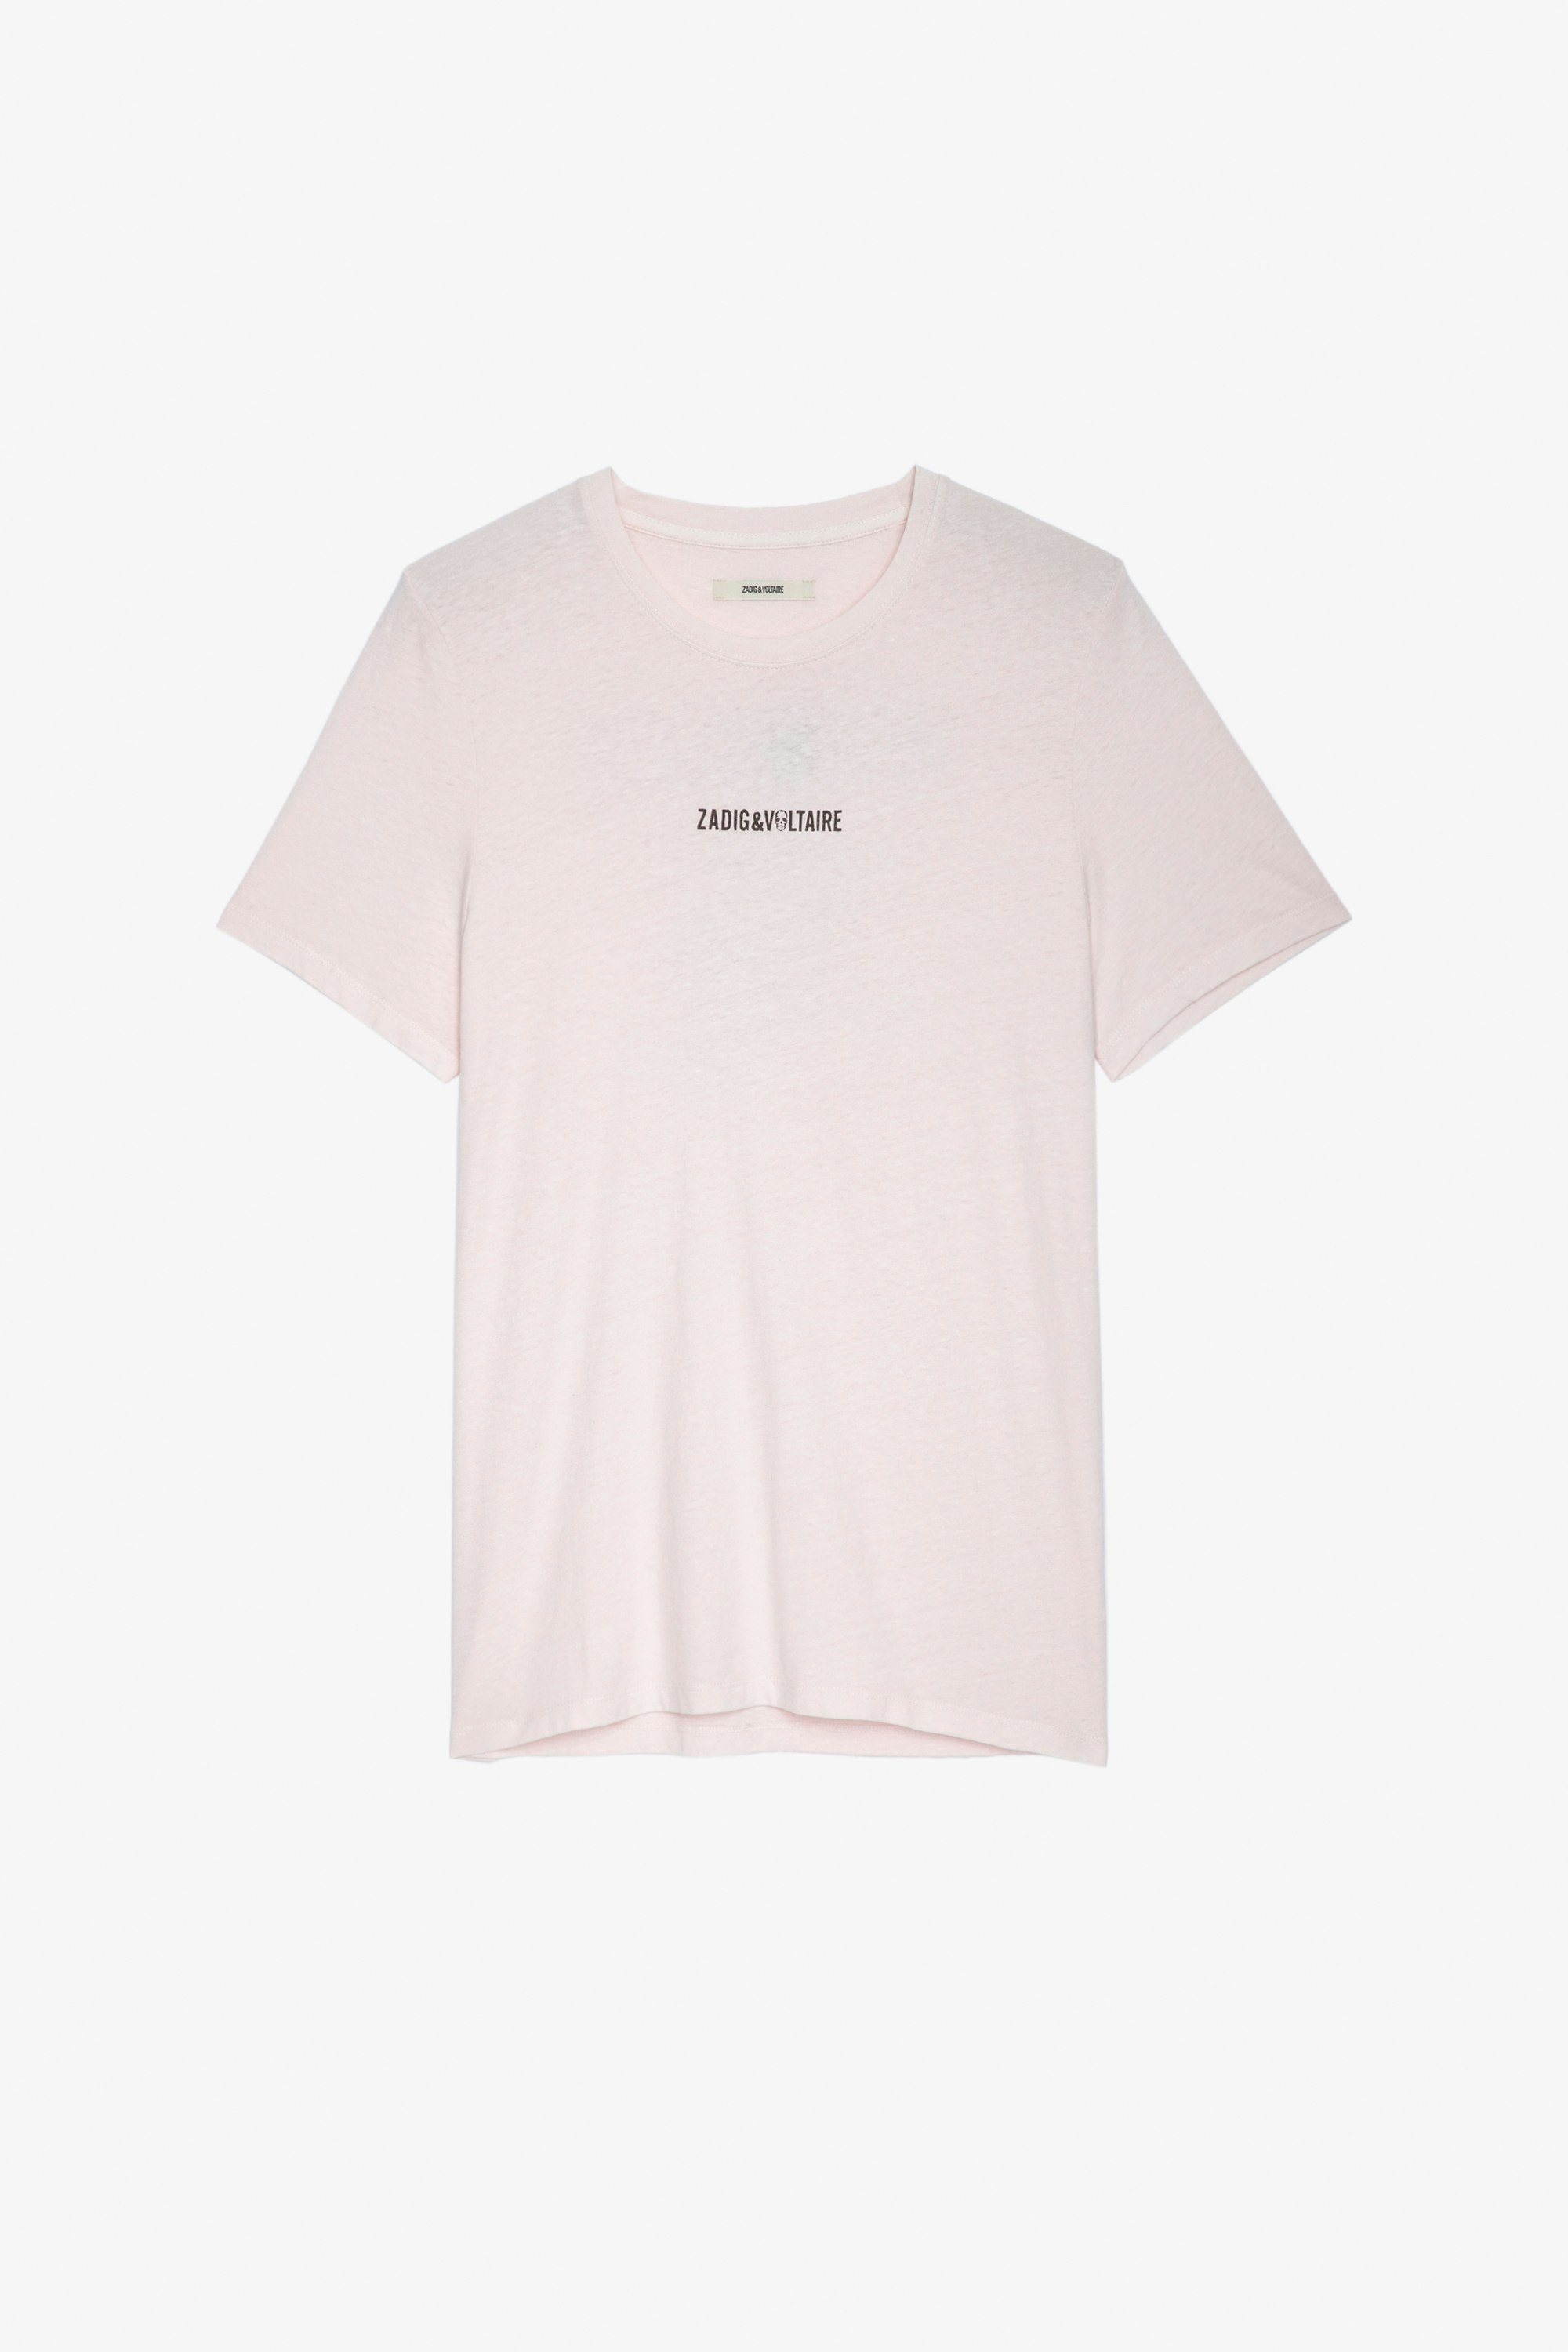 Camiseta Ted Camiseta rosa palo de algodón para hombre con firma ZV en la parte delantera y mensaje «Hédoniste» en la espalda